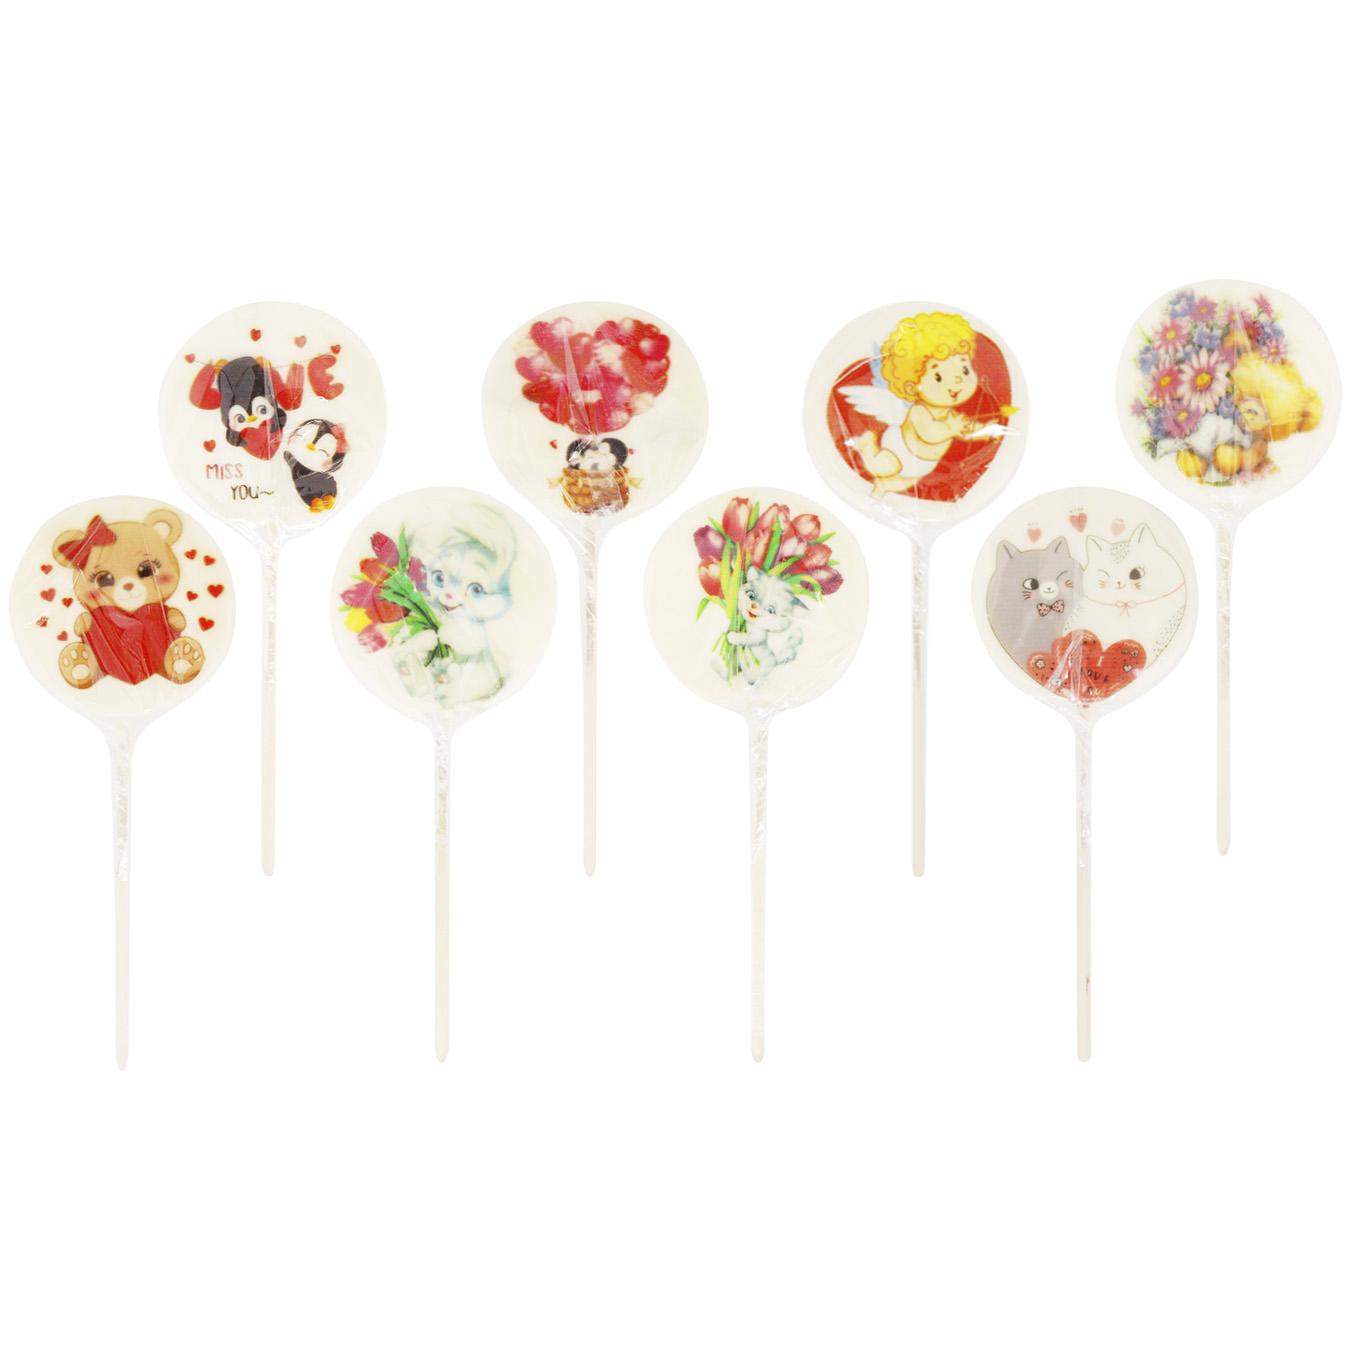 Lollipop Valentine Rocks 50g 2